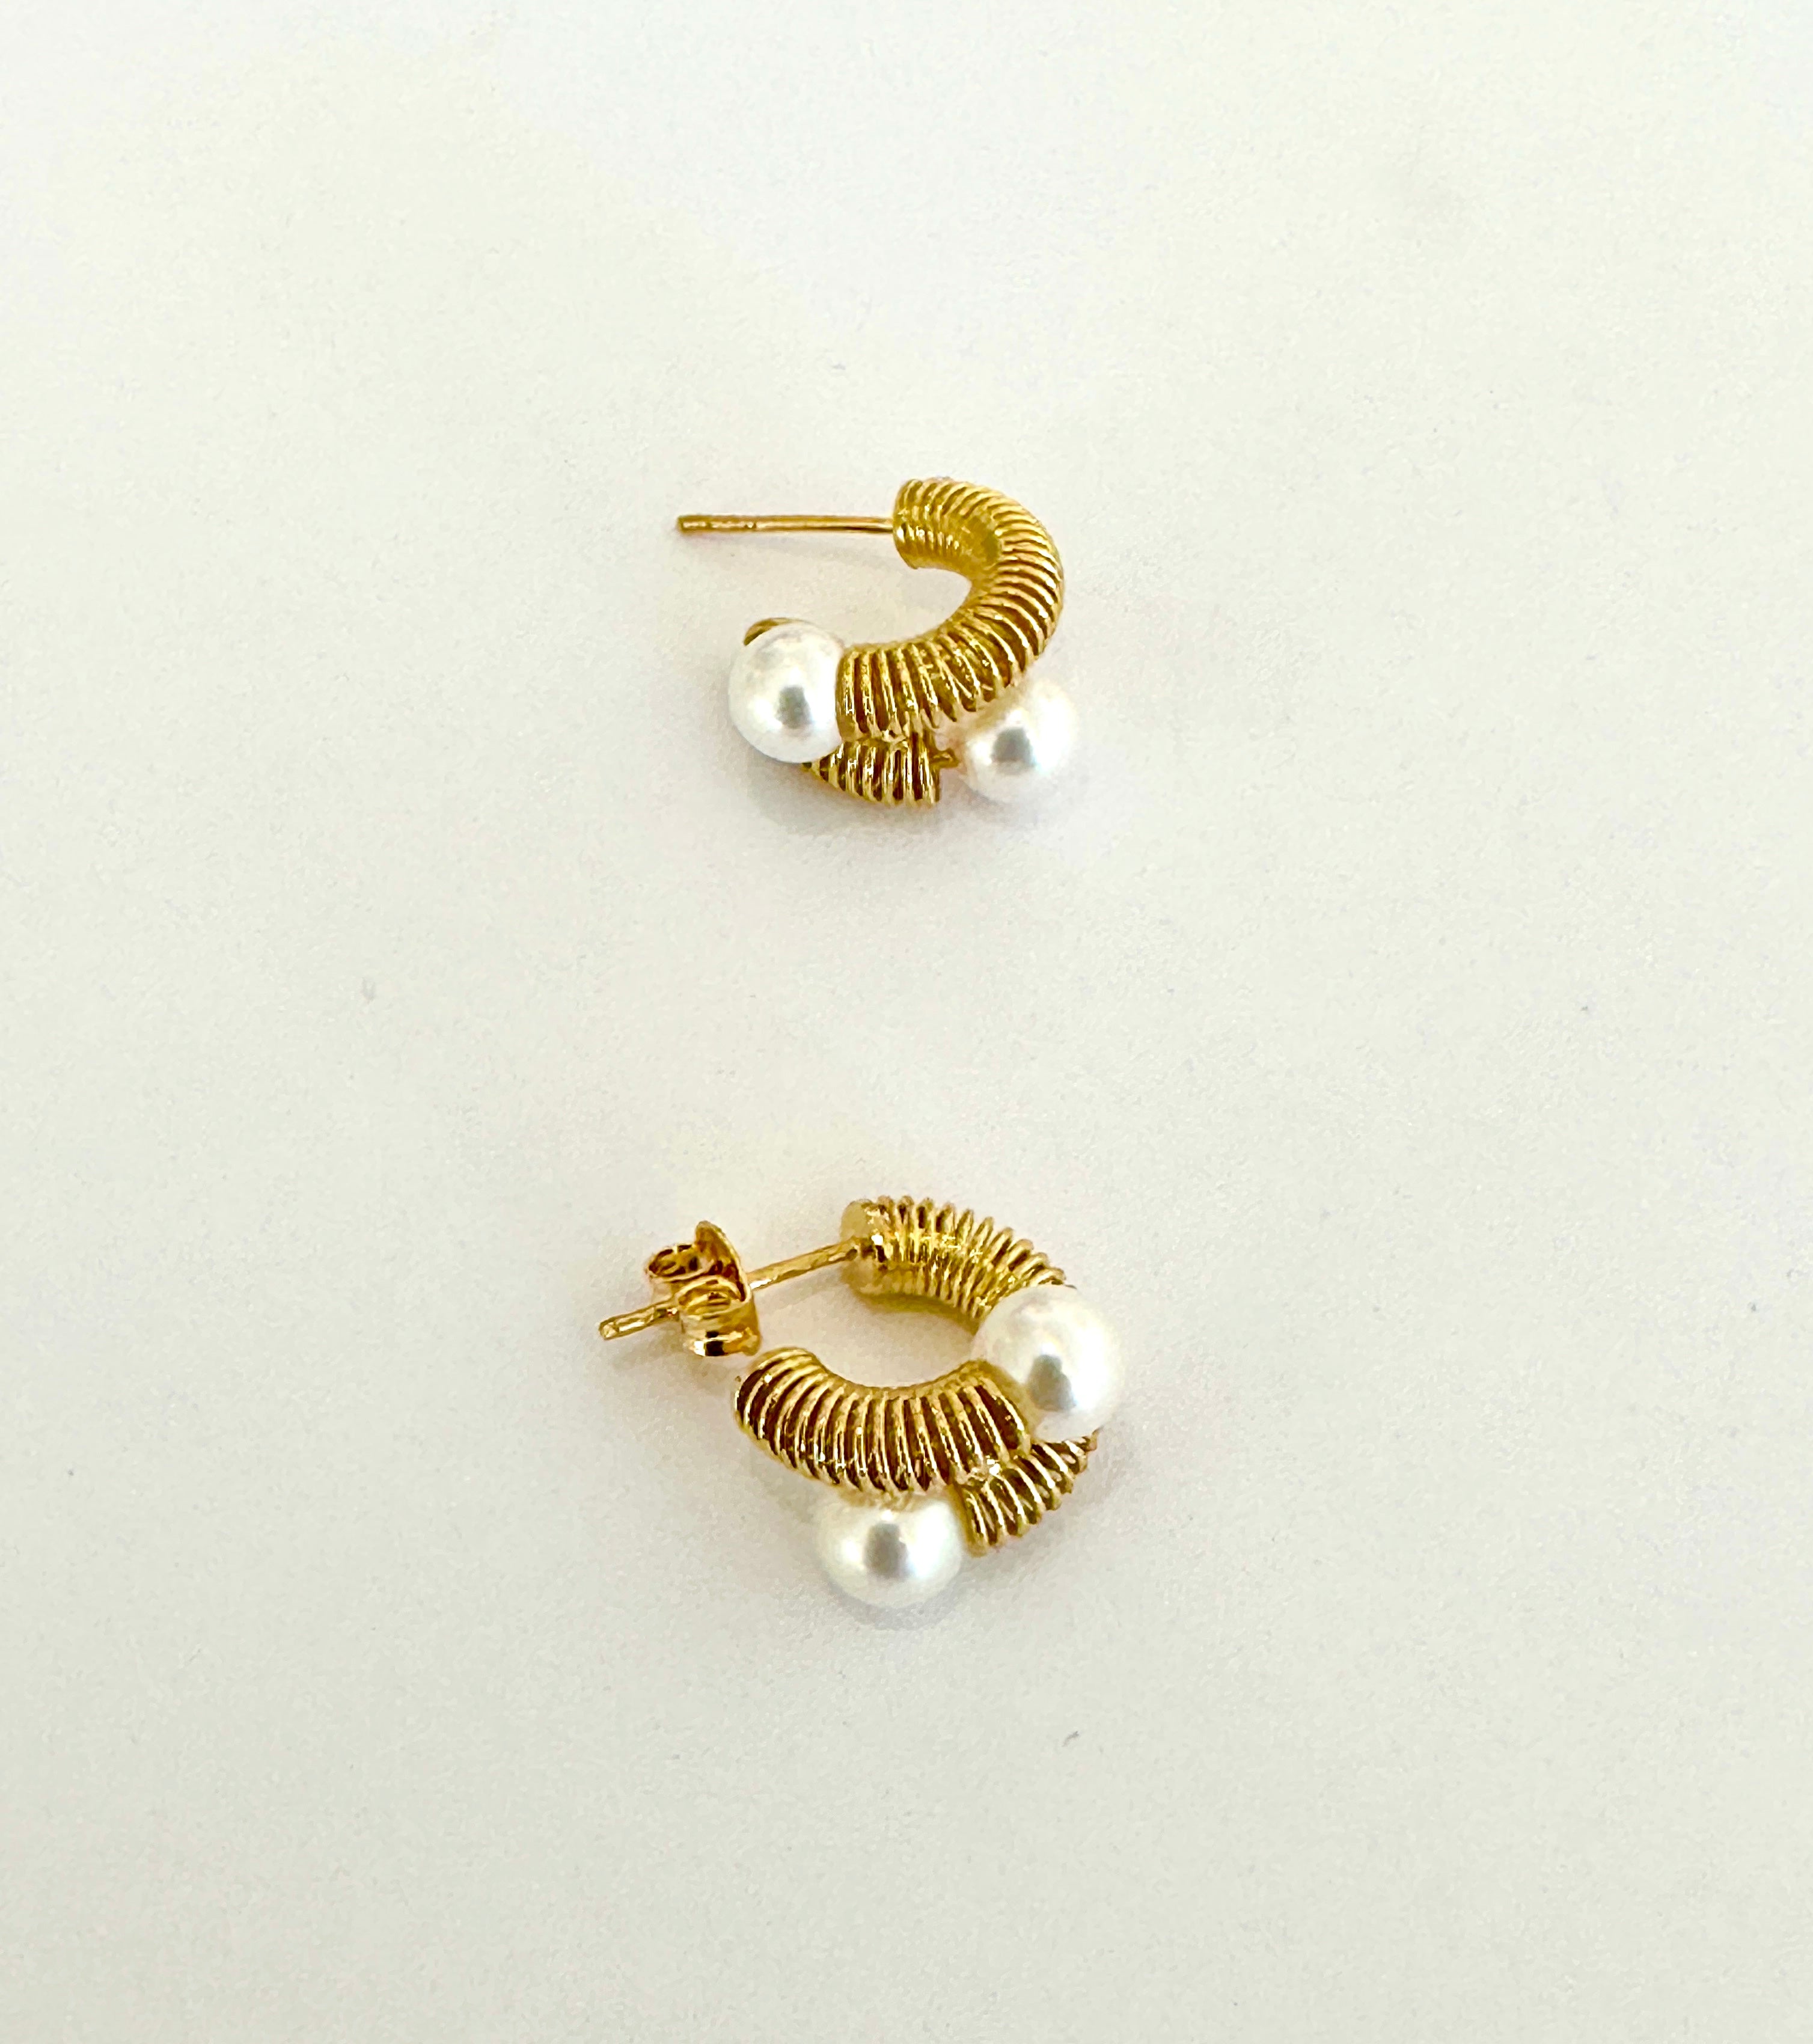 18K Yellow Gold Double-pearl Earrings